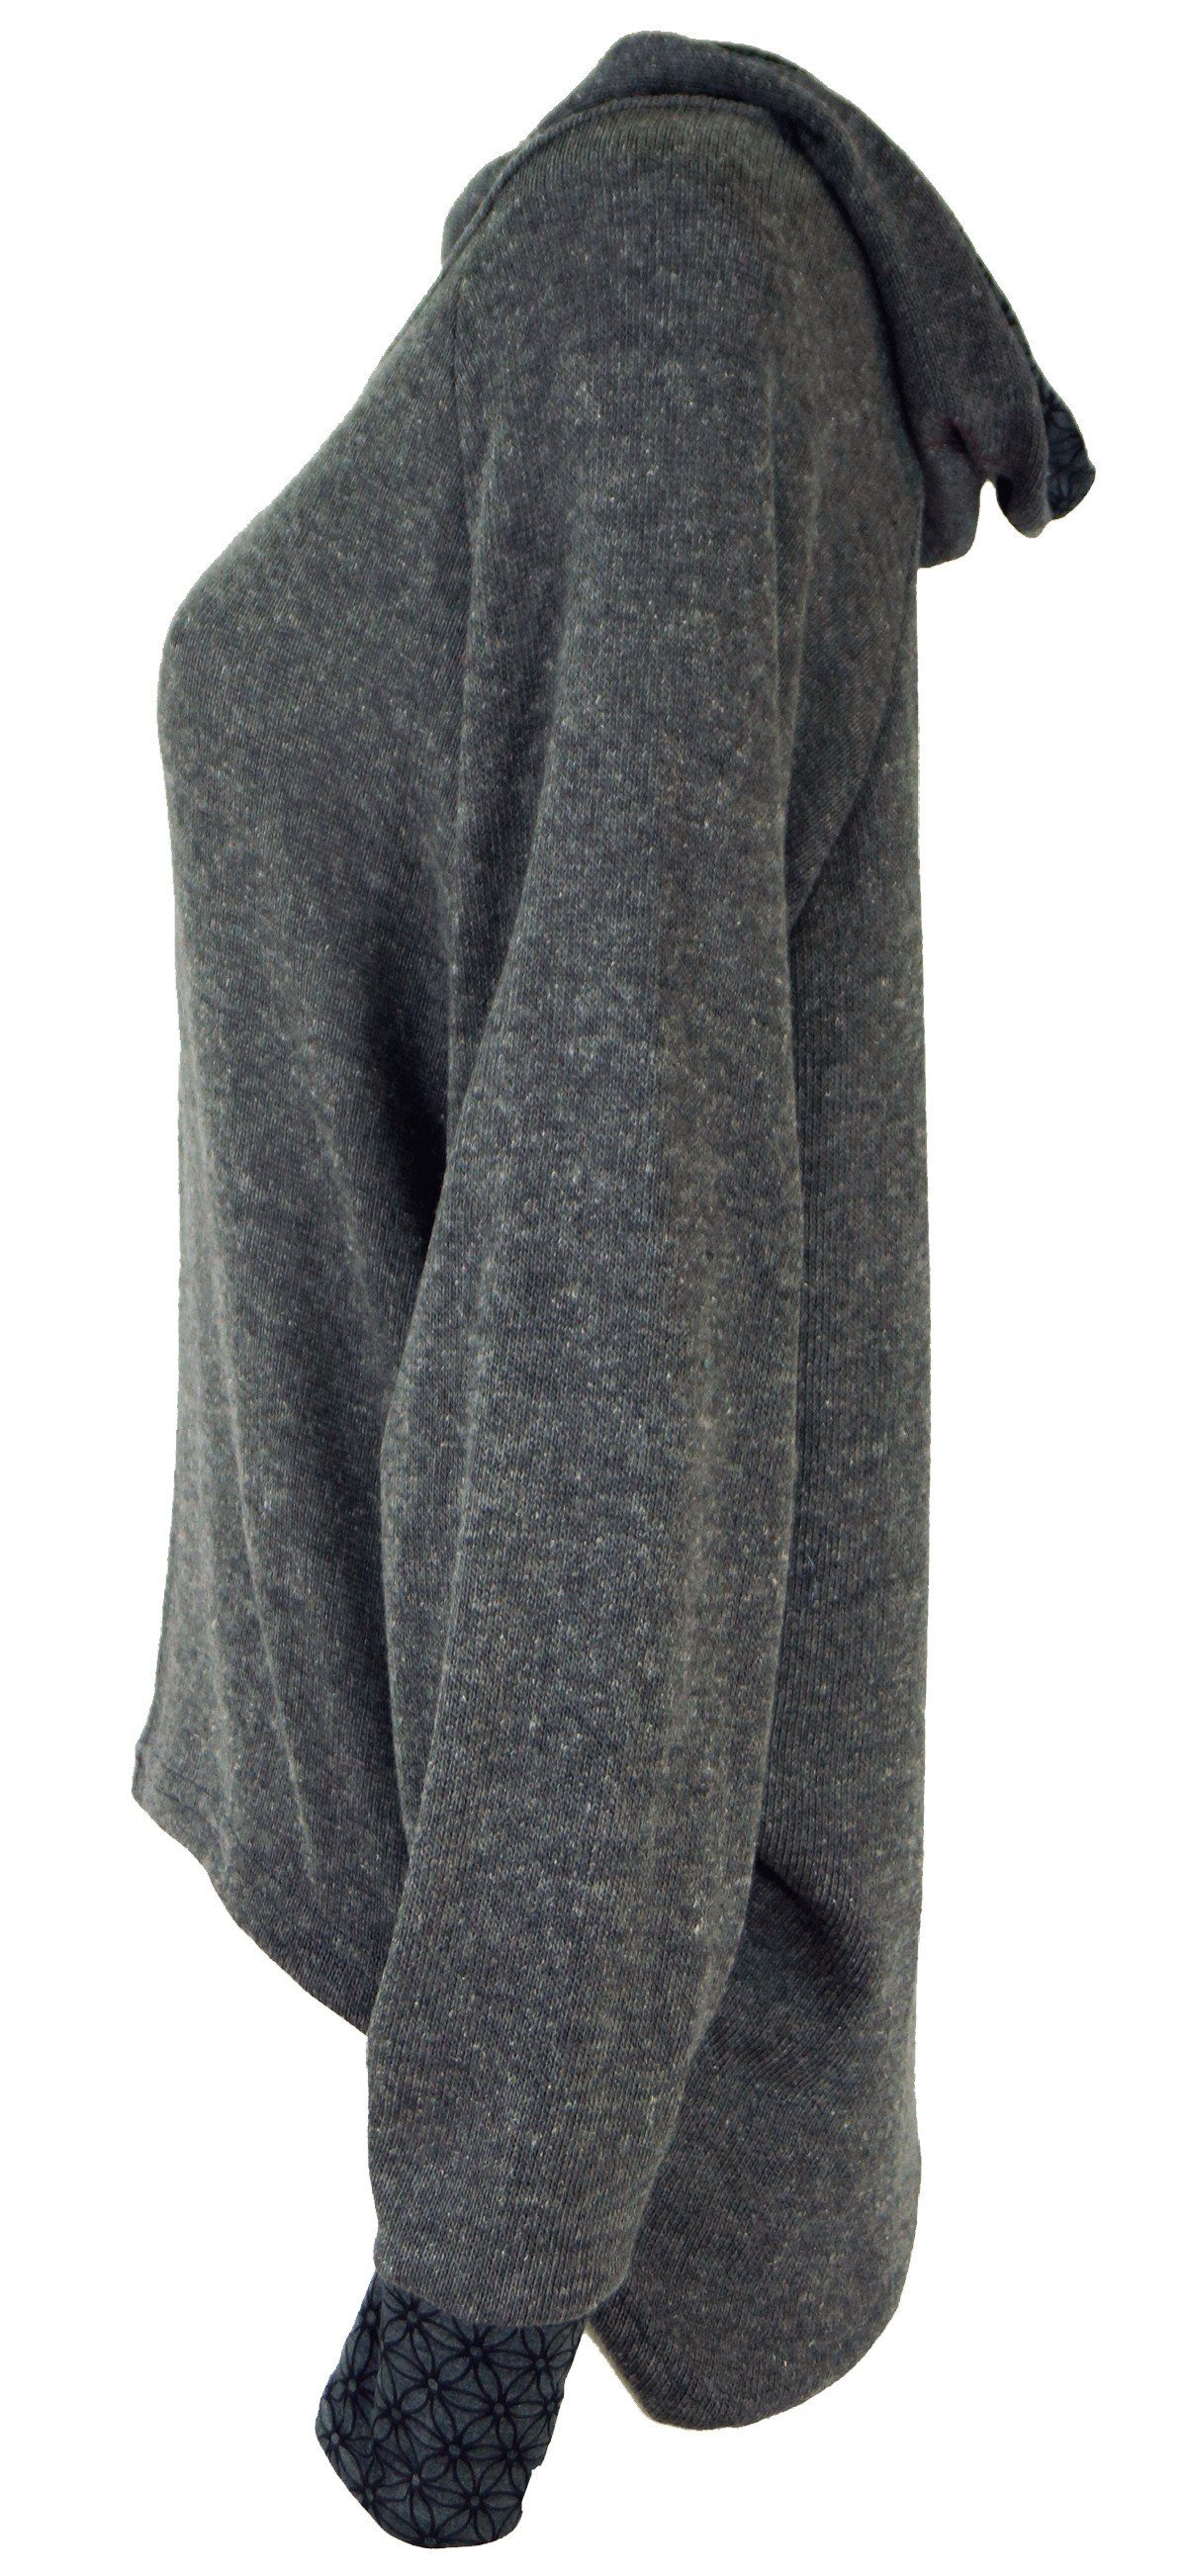 Guru-Shop Longsleeve Hoody, Sweatshirt, Bekleidung Pullover, alternative Kapuzenpullover -.. grau